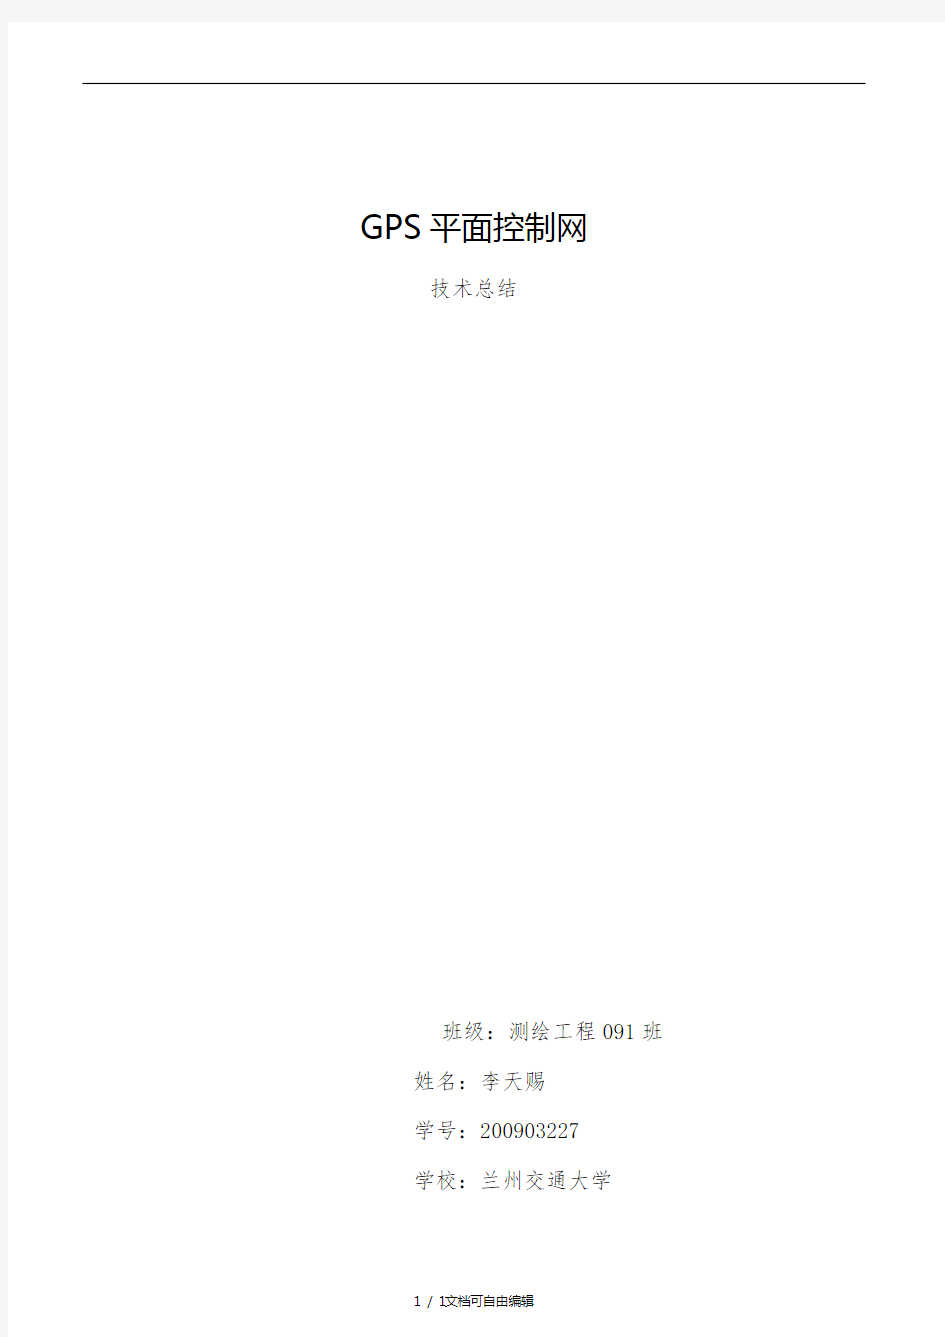 GPS控制网技术总结